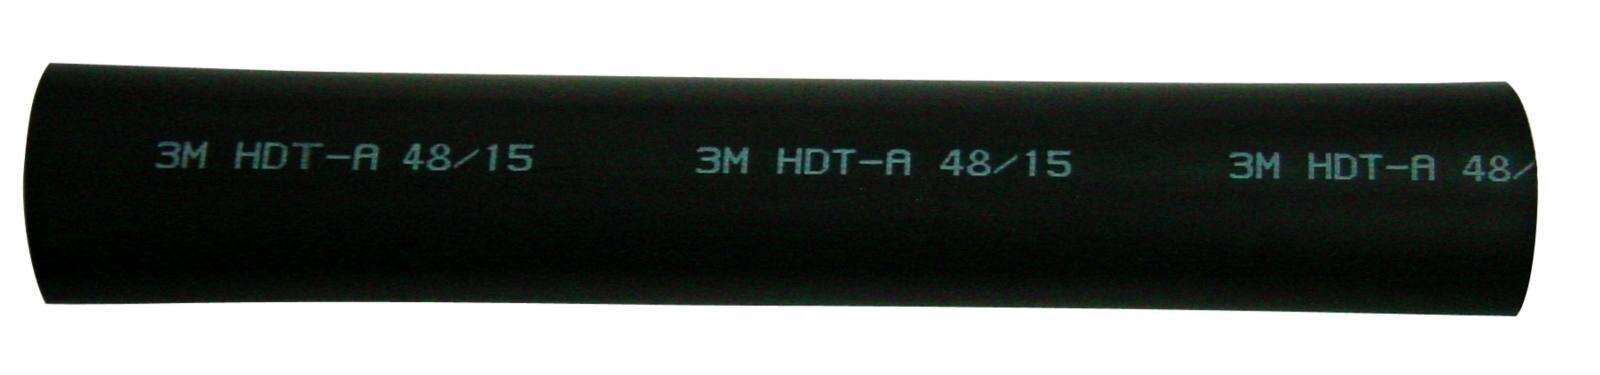  3M HDT-A Paksuseinäinen lämpökutisteputki liimalla, musta, 115/38 mm, 1 m